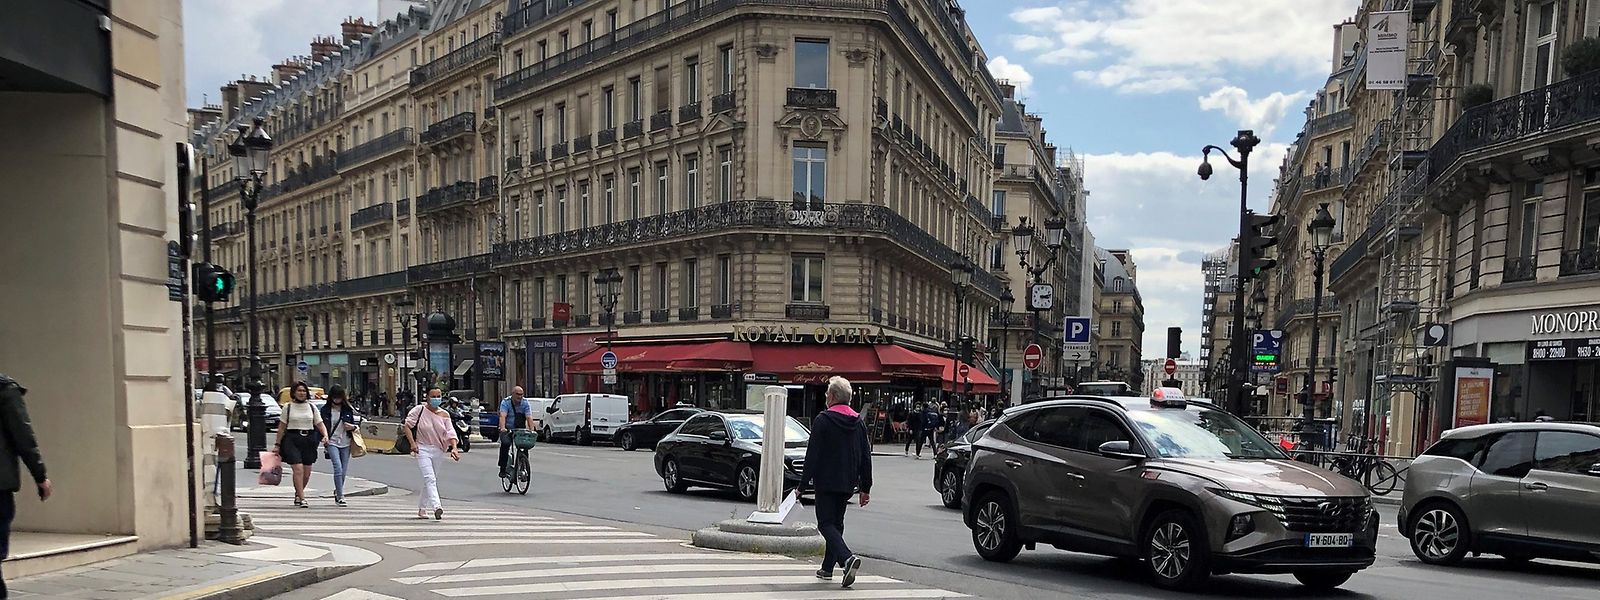 Die Liste der Wohnungsprobleme in Paris ist lang - auch wenn die sozialistische Bürgermeisterin Anne Hidalgo seit Jahren versucht, die Lage zu verbessern.